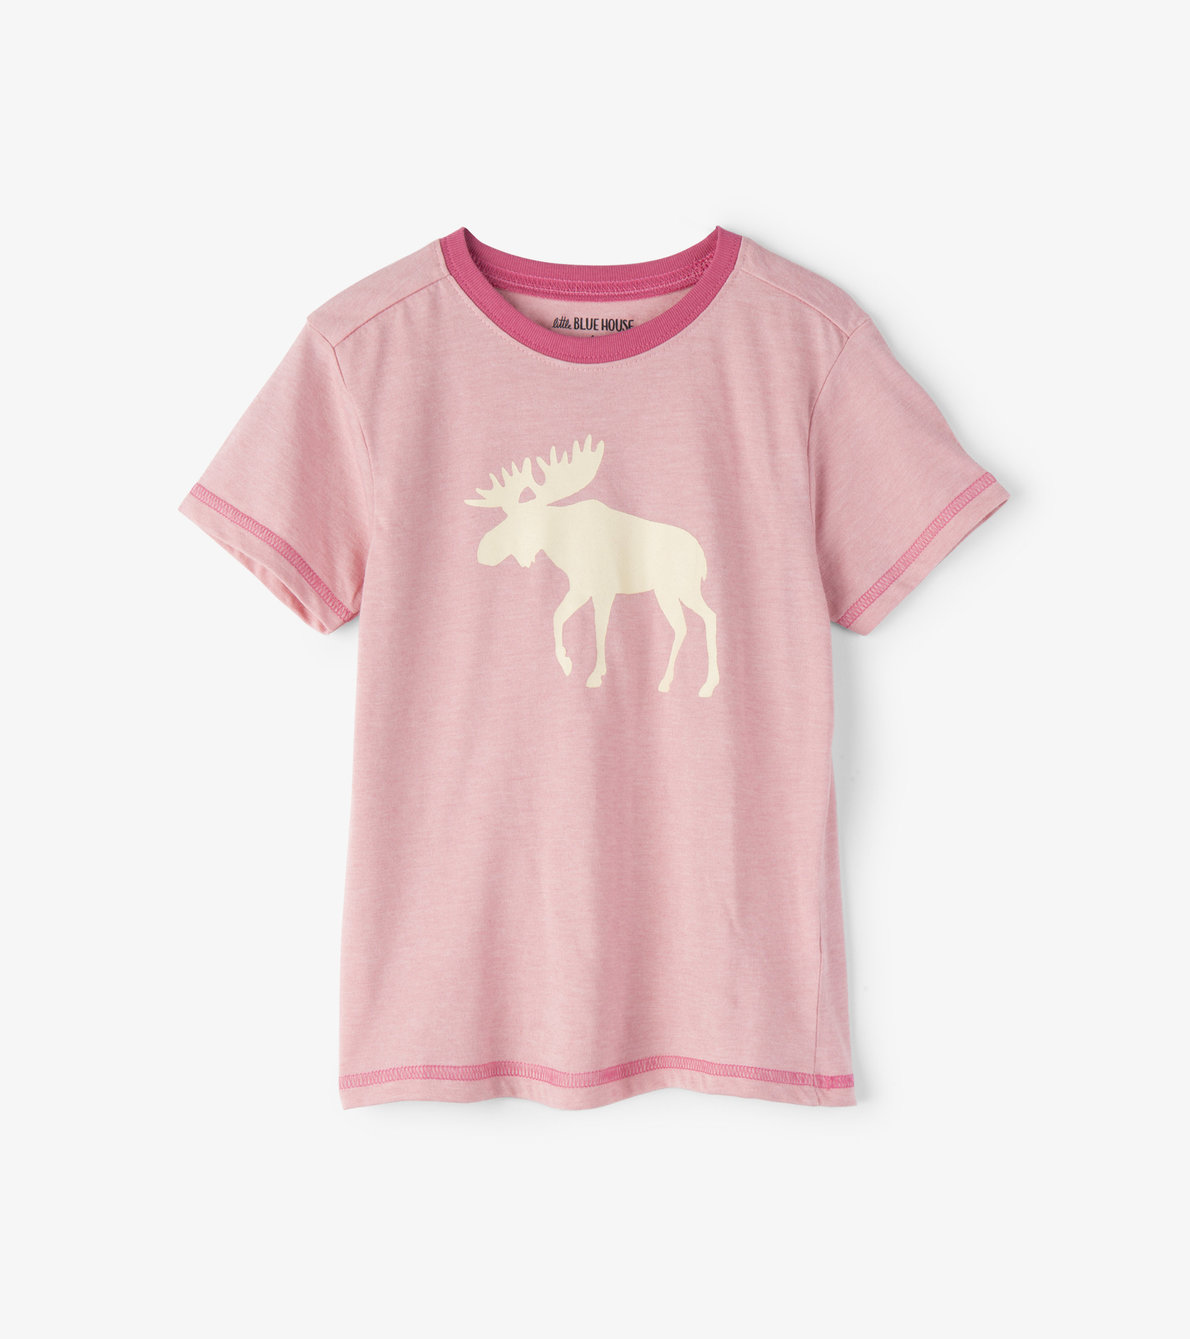 View larger image of Moose on Pink Kids Tee